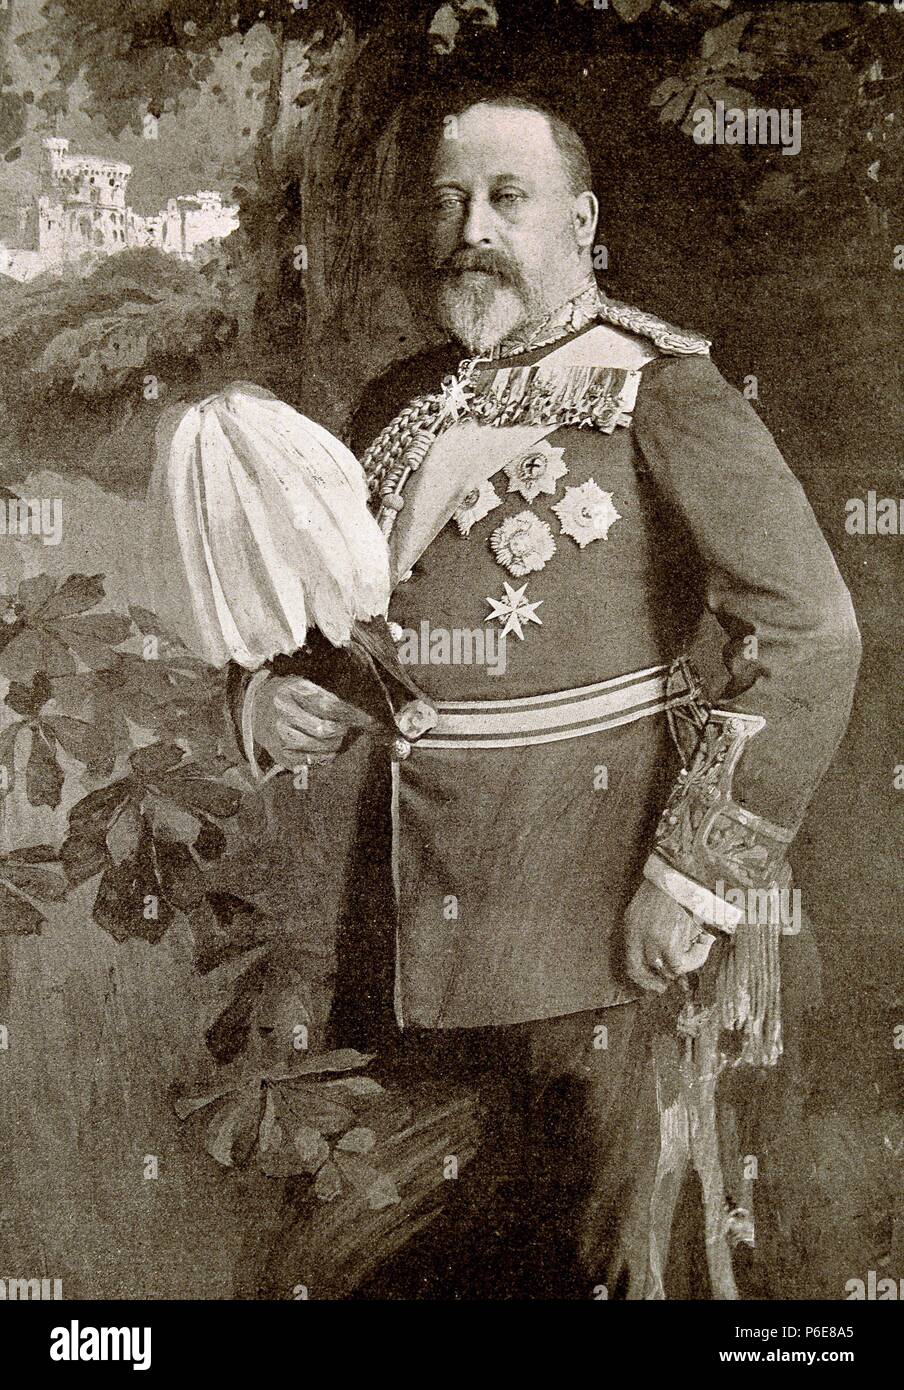 EDUARDO VII. REY DE GRAN BRETAÑA E IRLANDA. 1841-1910. GRABADO DE L' ILLUSTRATION. Stock Photo